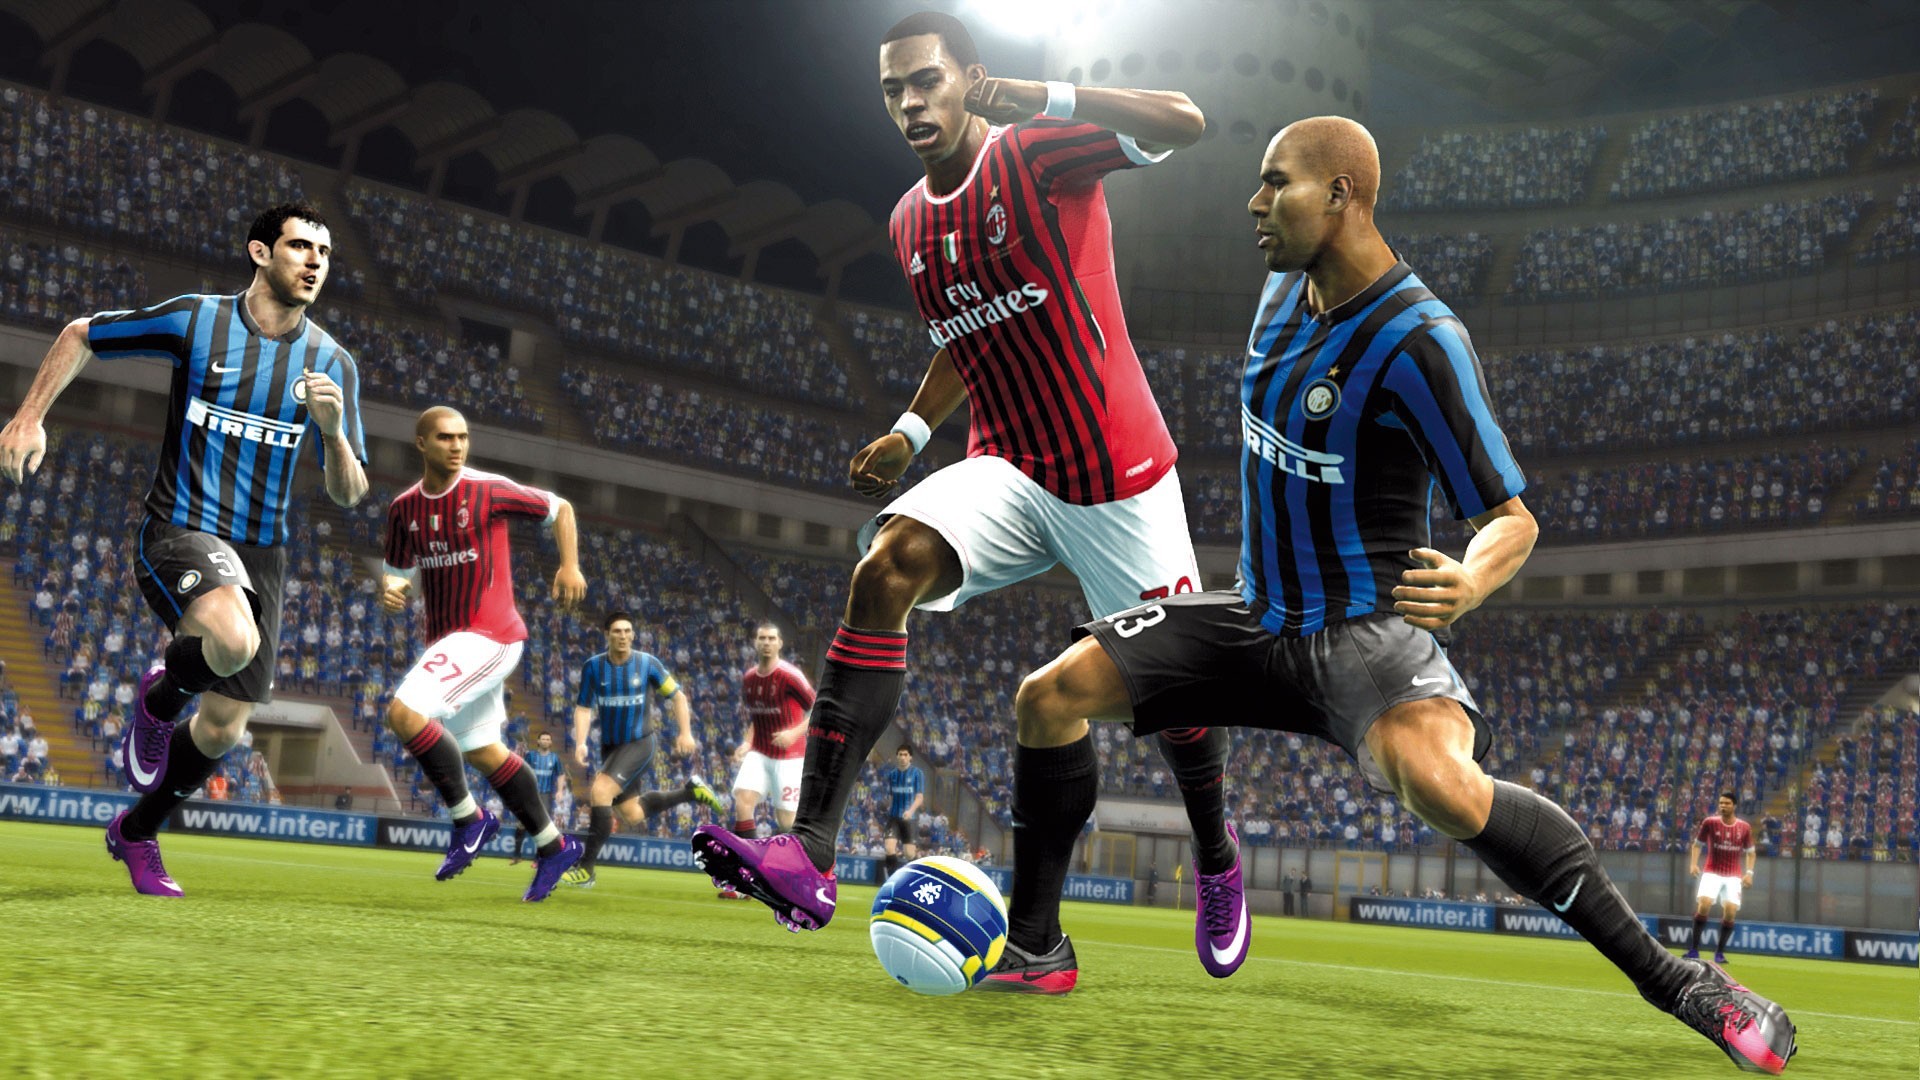 FIFA, Inter Milan, AC Milan Wallpapers HD / Desktop and